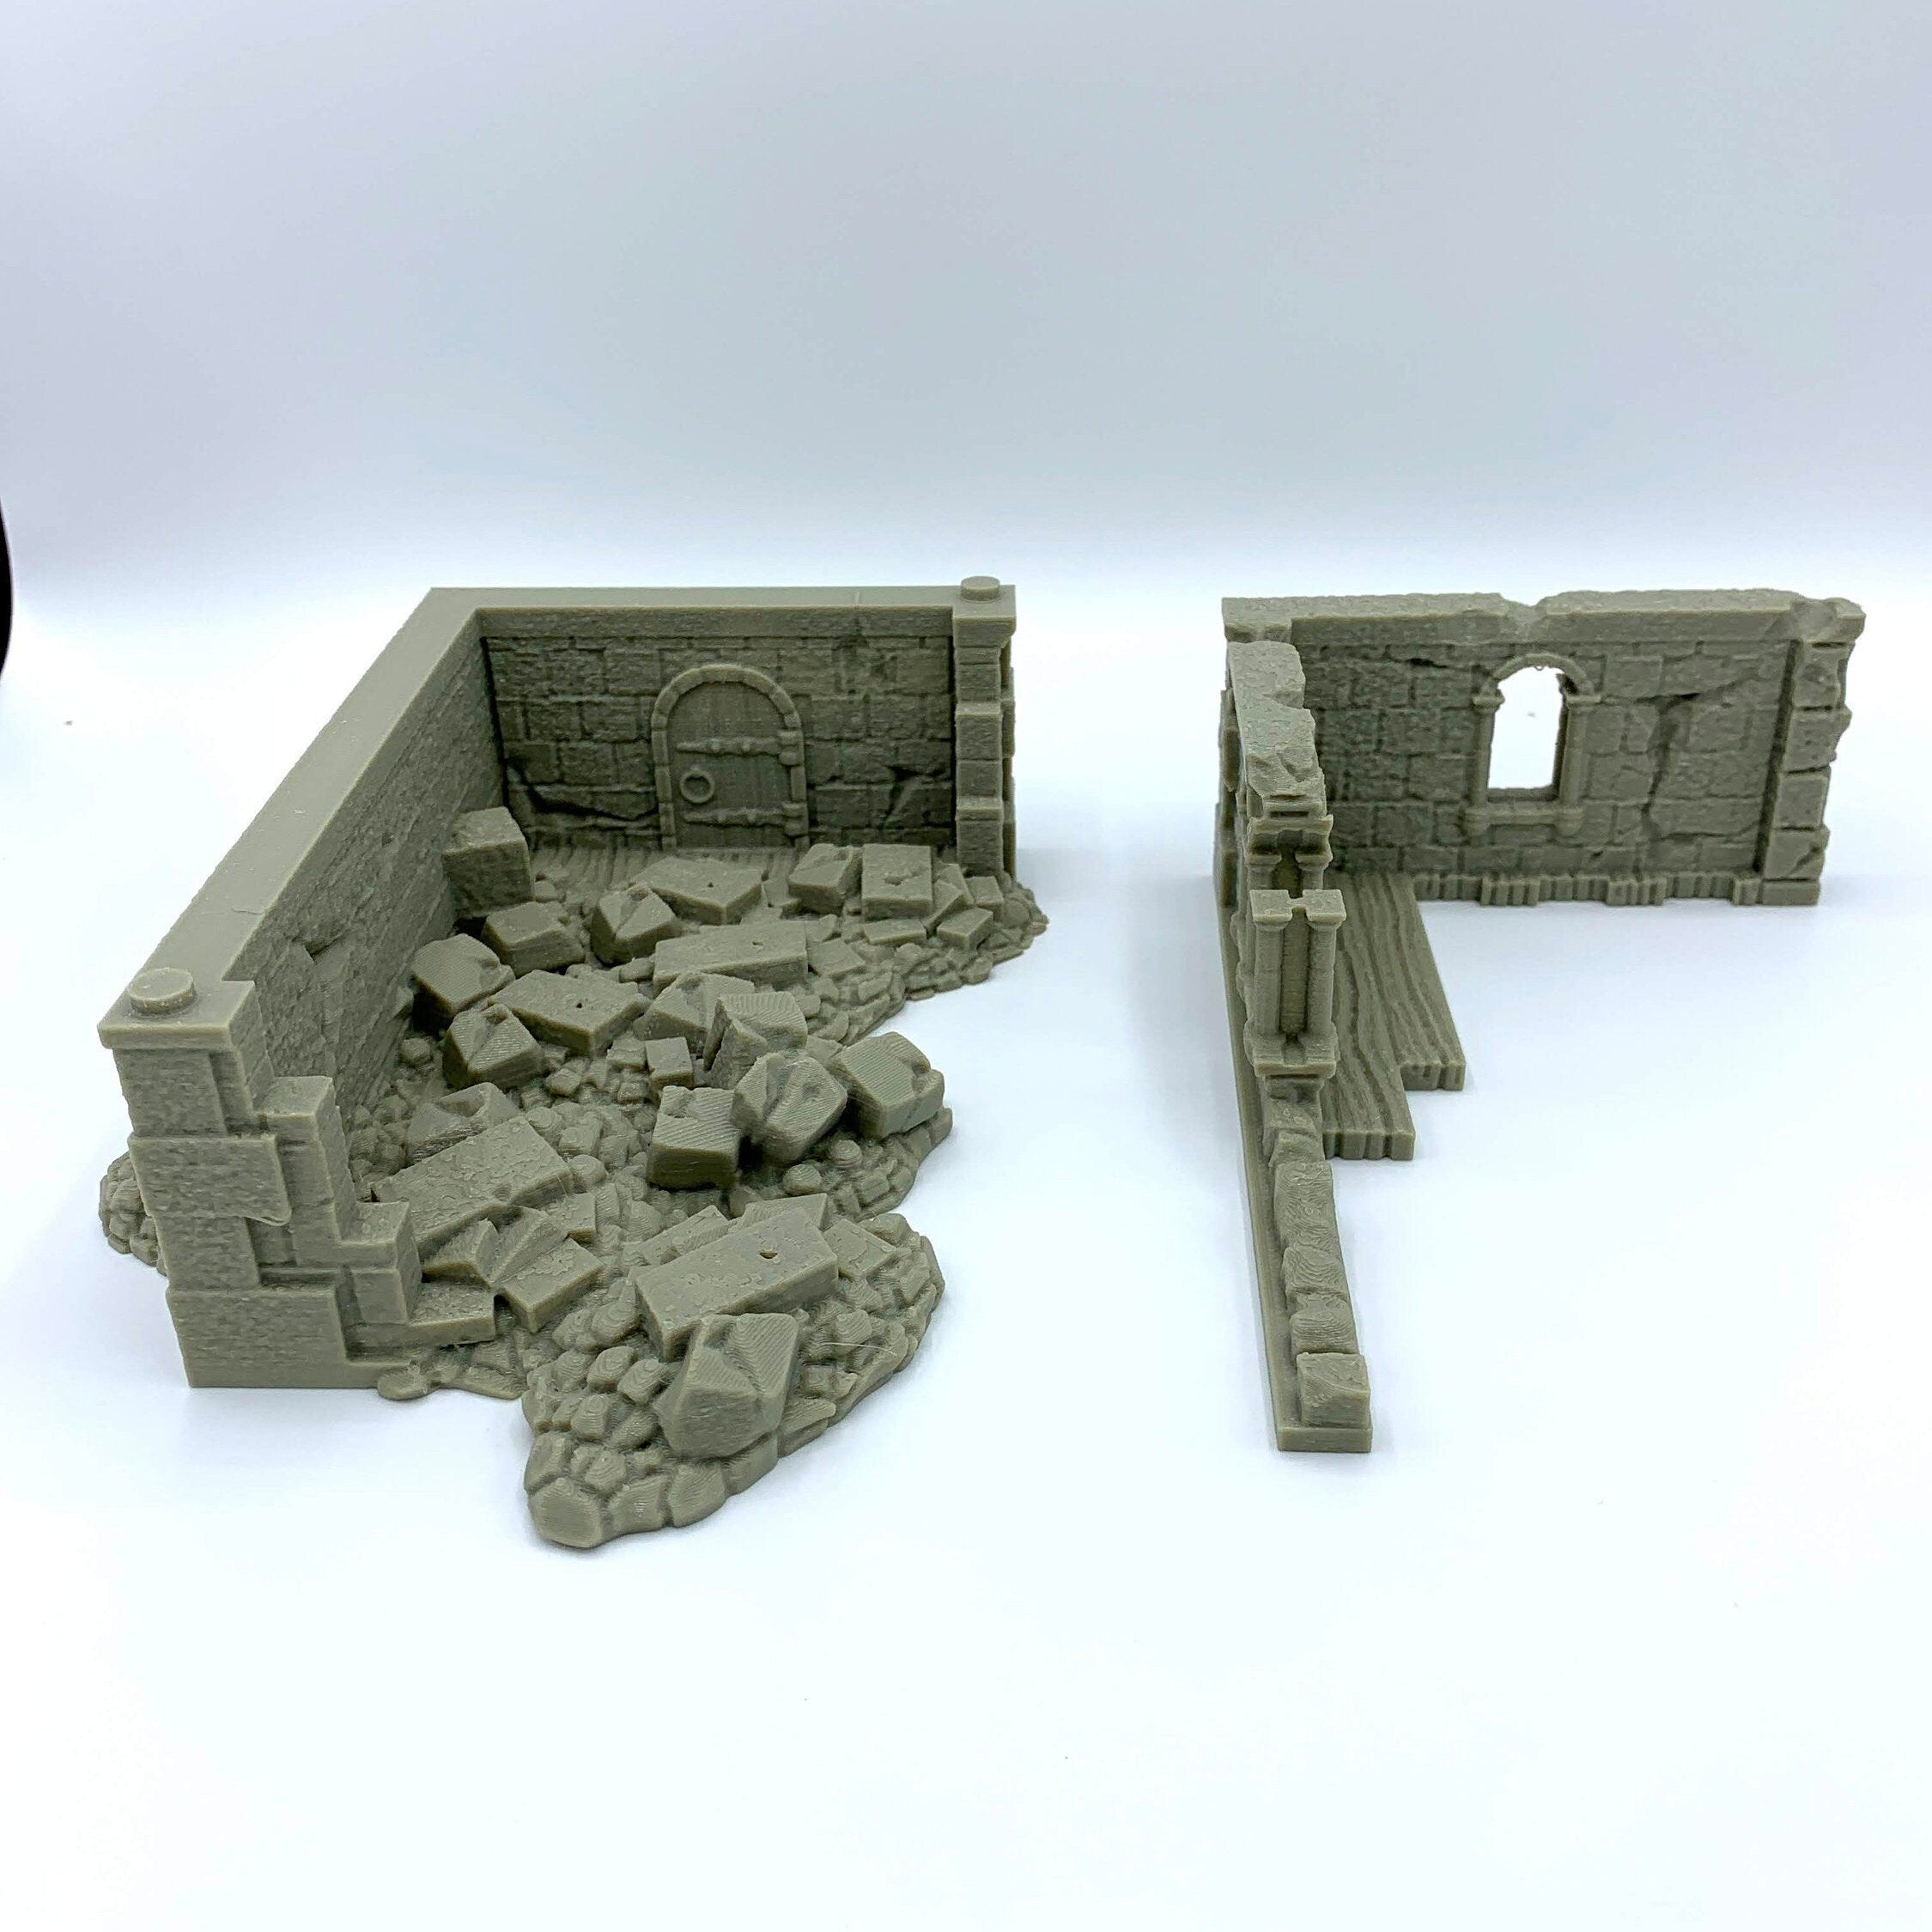 Stormguard - Ruined House 2 / 28mm Wargame / RPG 3d Printed Tabletop Wargaming Terrain